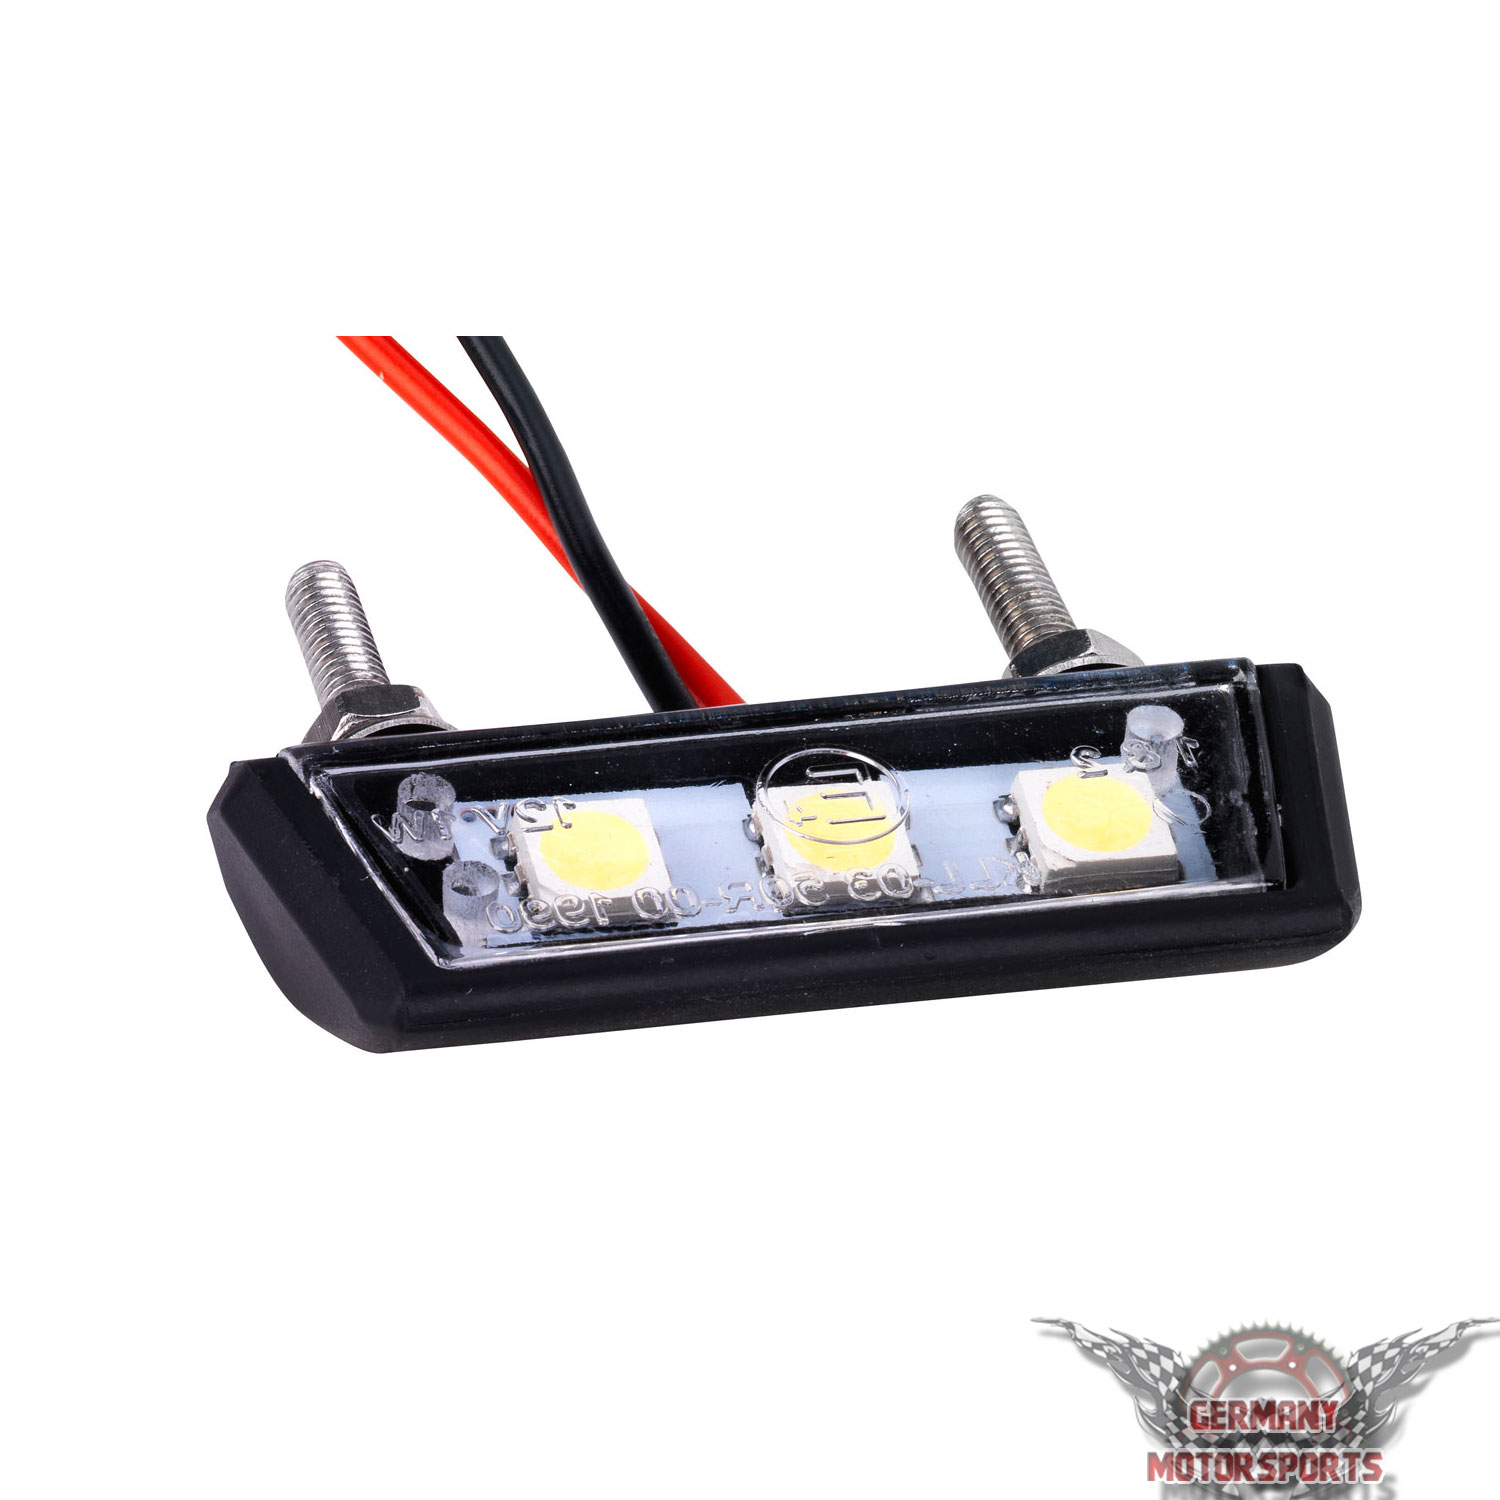 ECSiNG 4 x Motorrad-Kennzeichenbeleuchtung, 12 V, 3 LEDs, universal, für  Auto, Motorrad, Kennzeichenbeleuchtung, Schrauben, Bolzenlicht